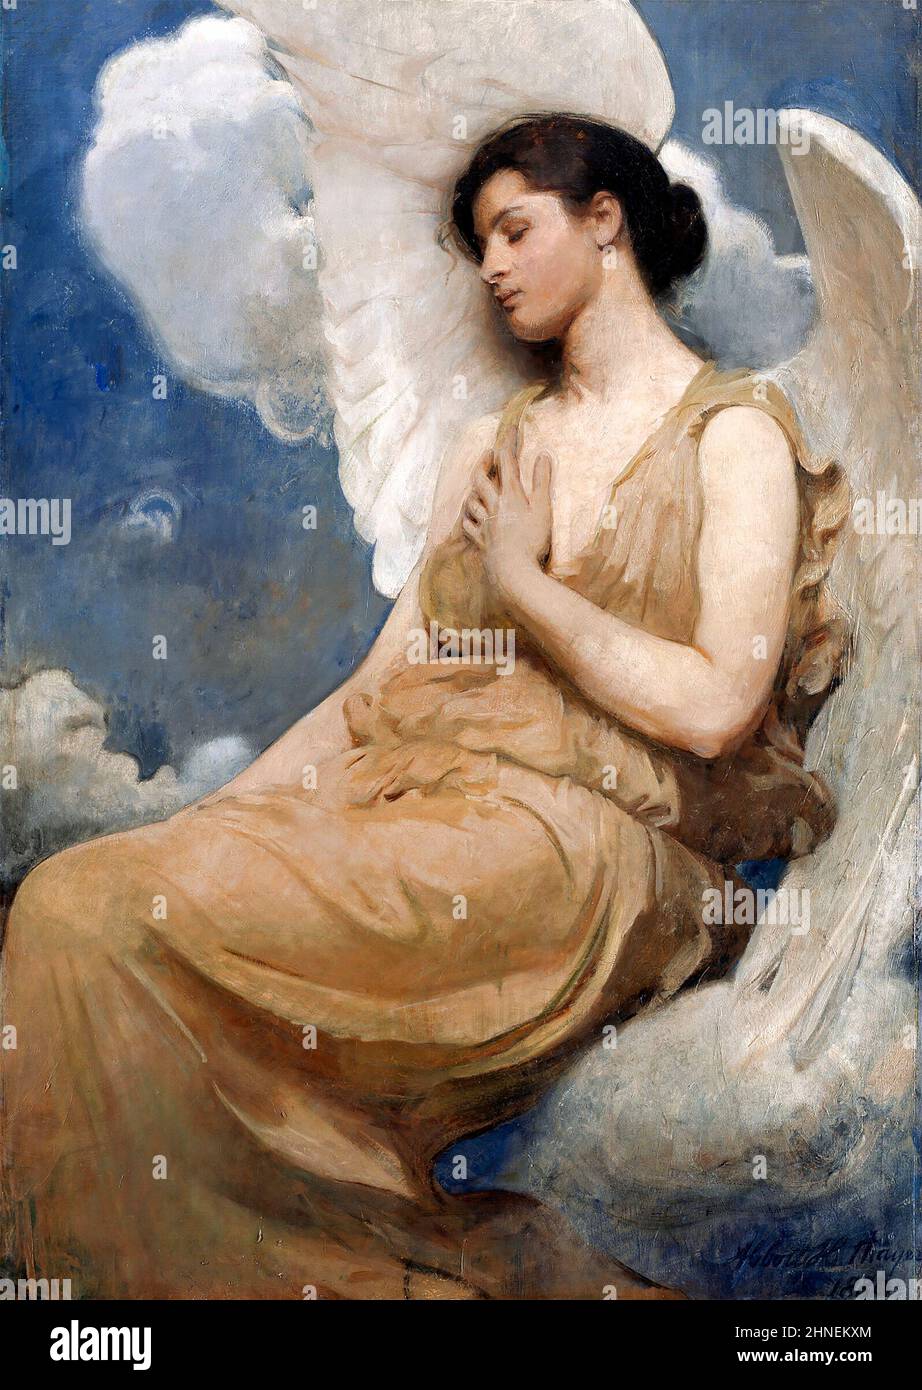 Figure ailée par l'artiste américain Abbott Handerson Thayer (1849-1921), huile sur toile, 1889 Banque D'Images